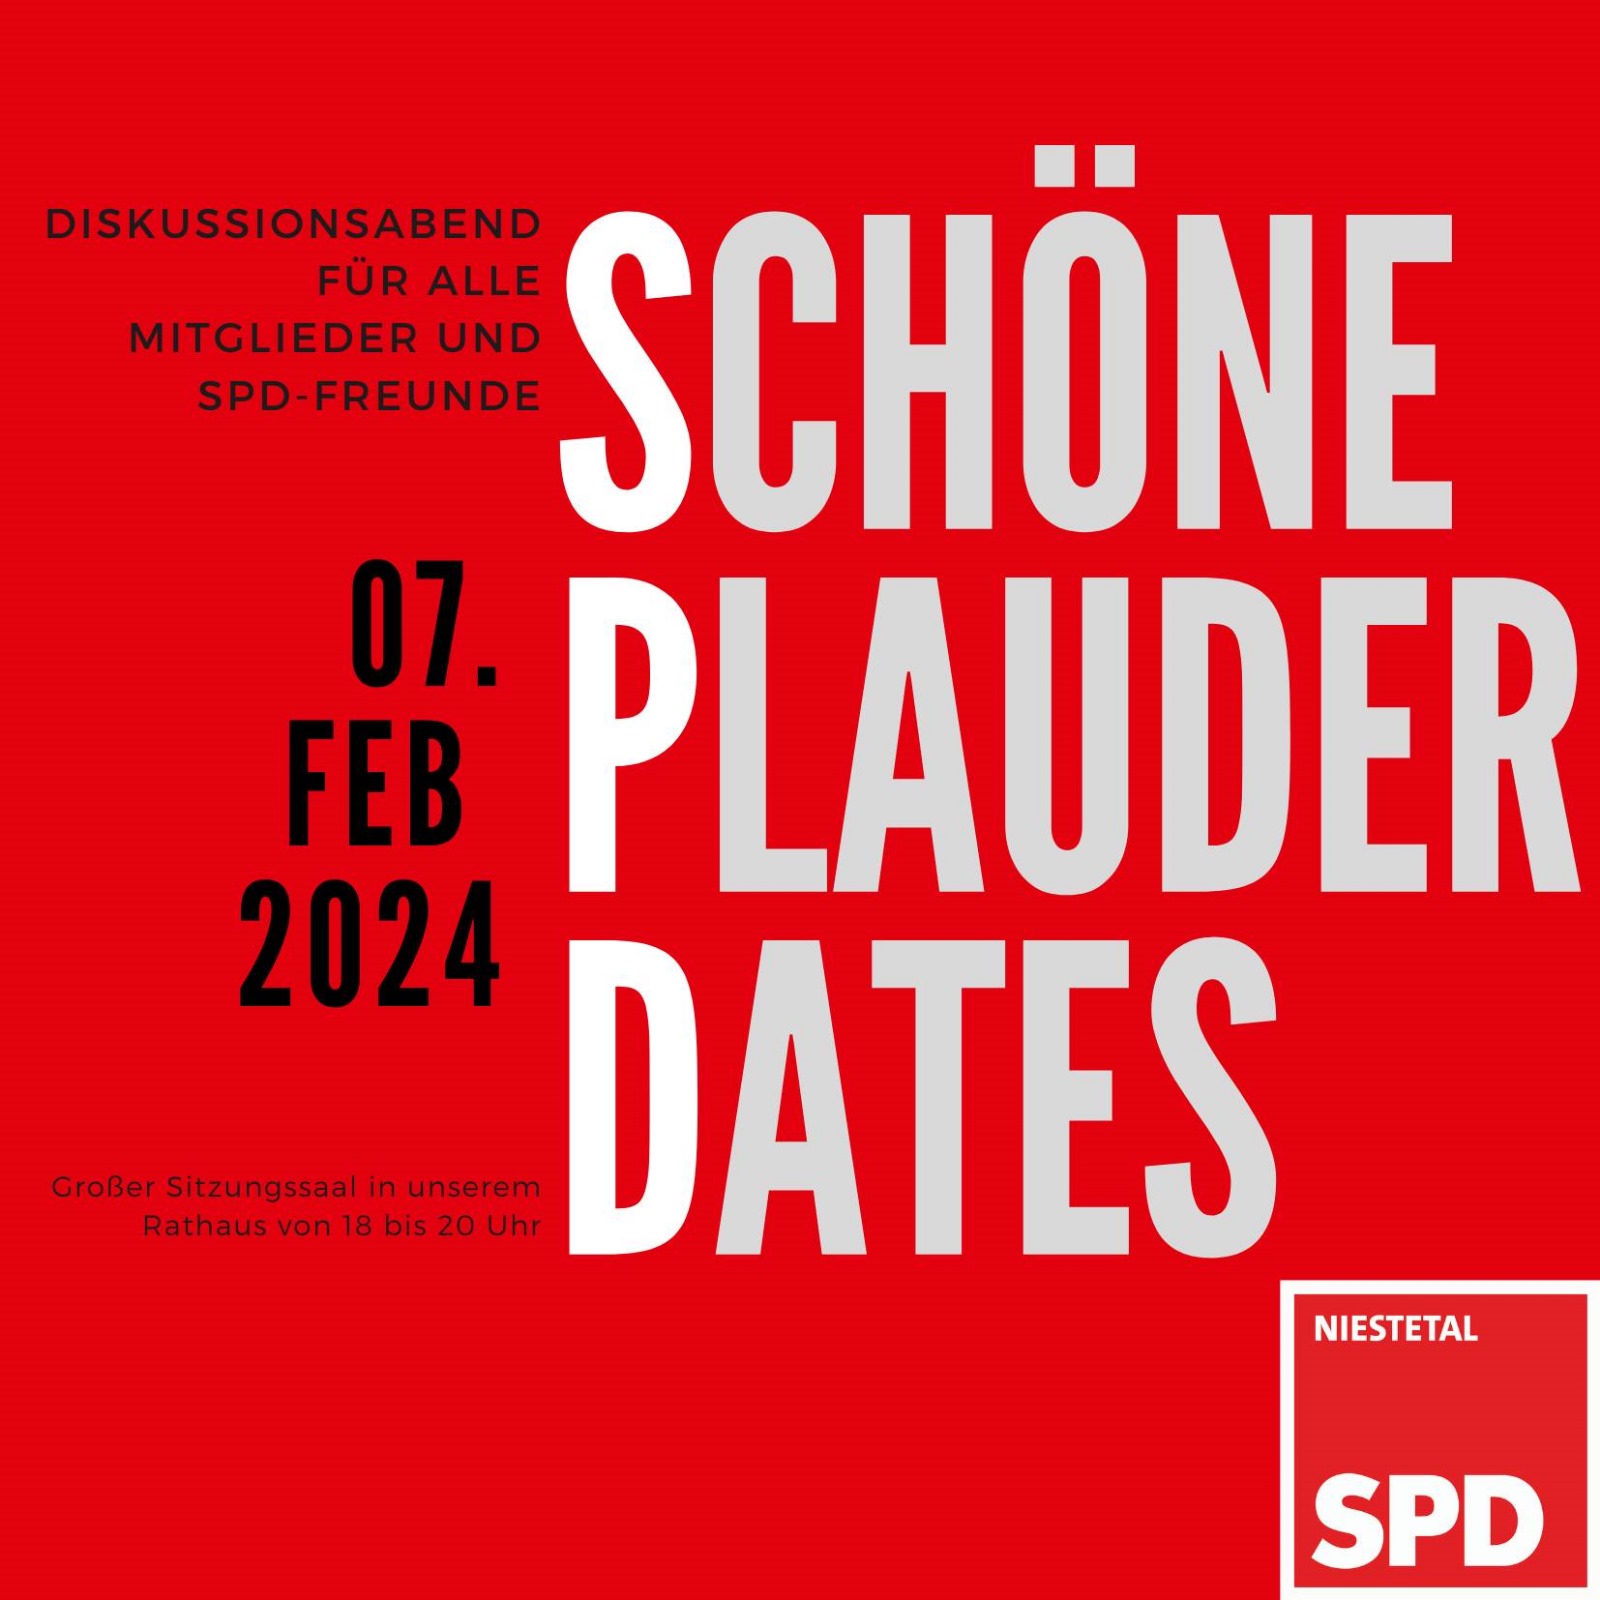 You are currently viewing Schöne Plauder Dates – Diskussionsabend für alle Mitglieder*innen und SPD-Freunde